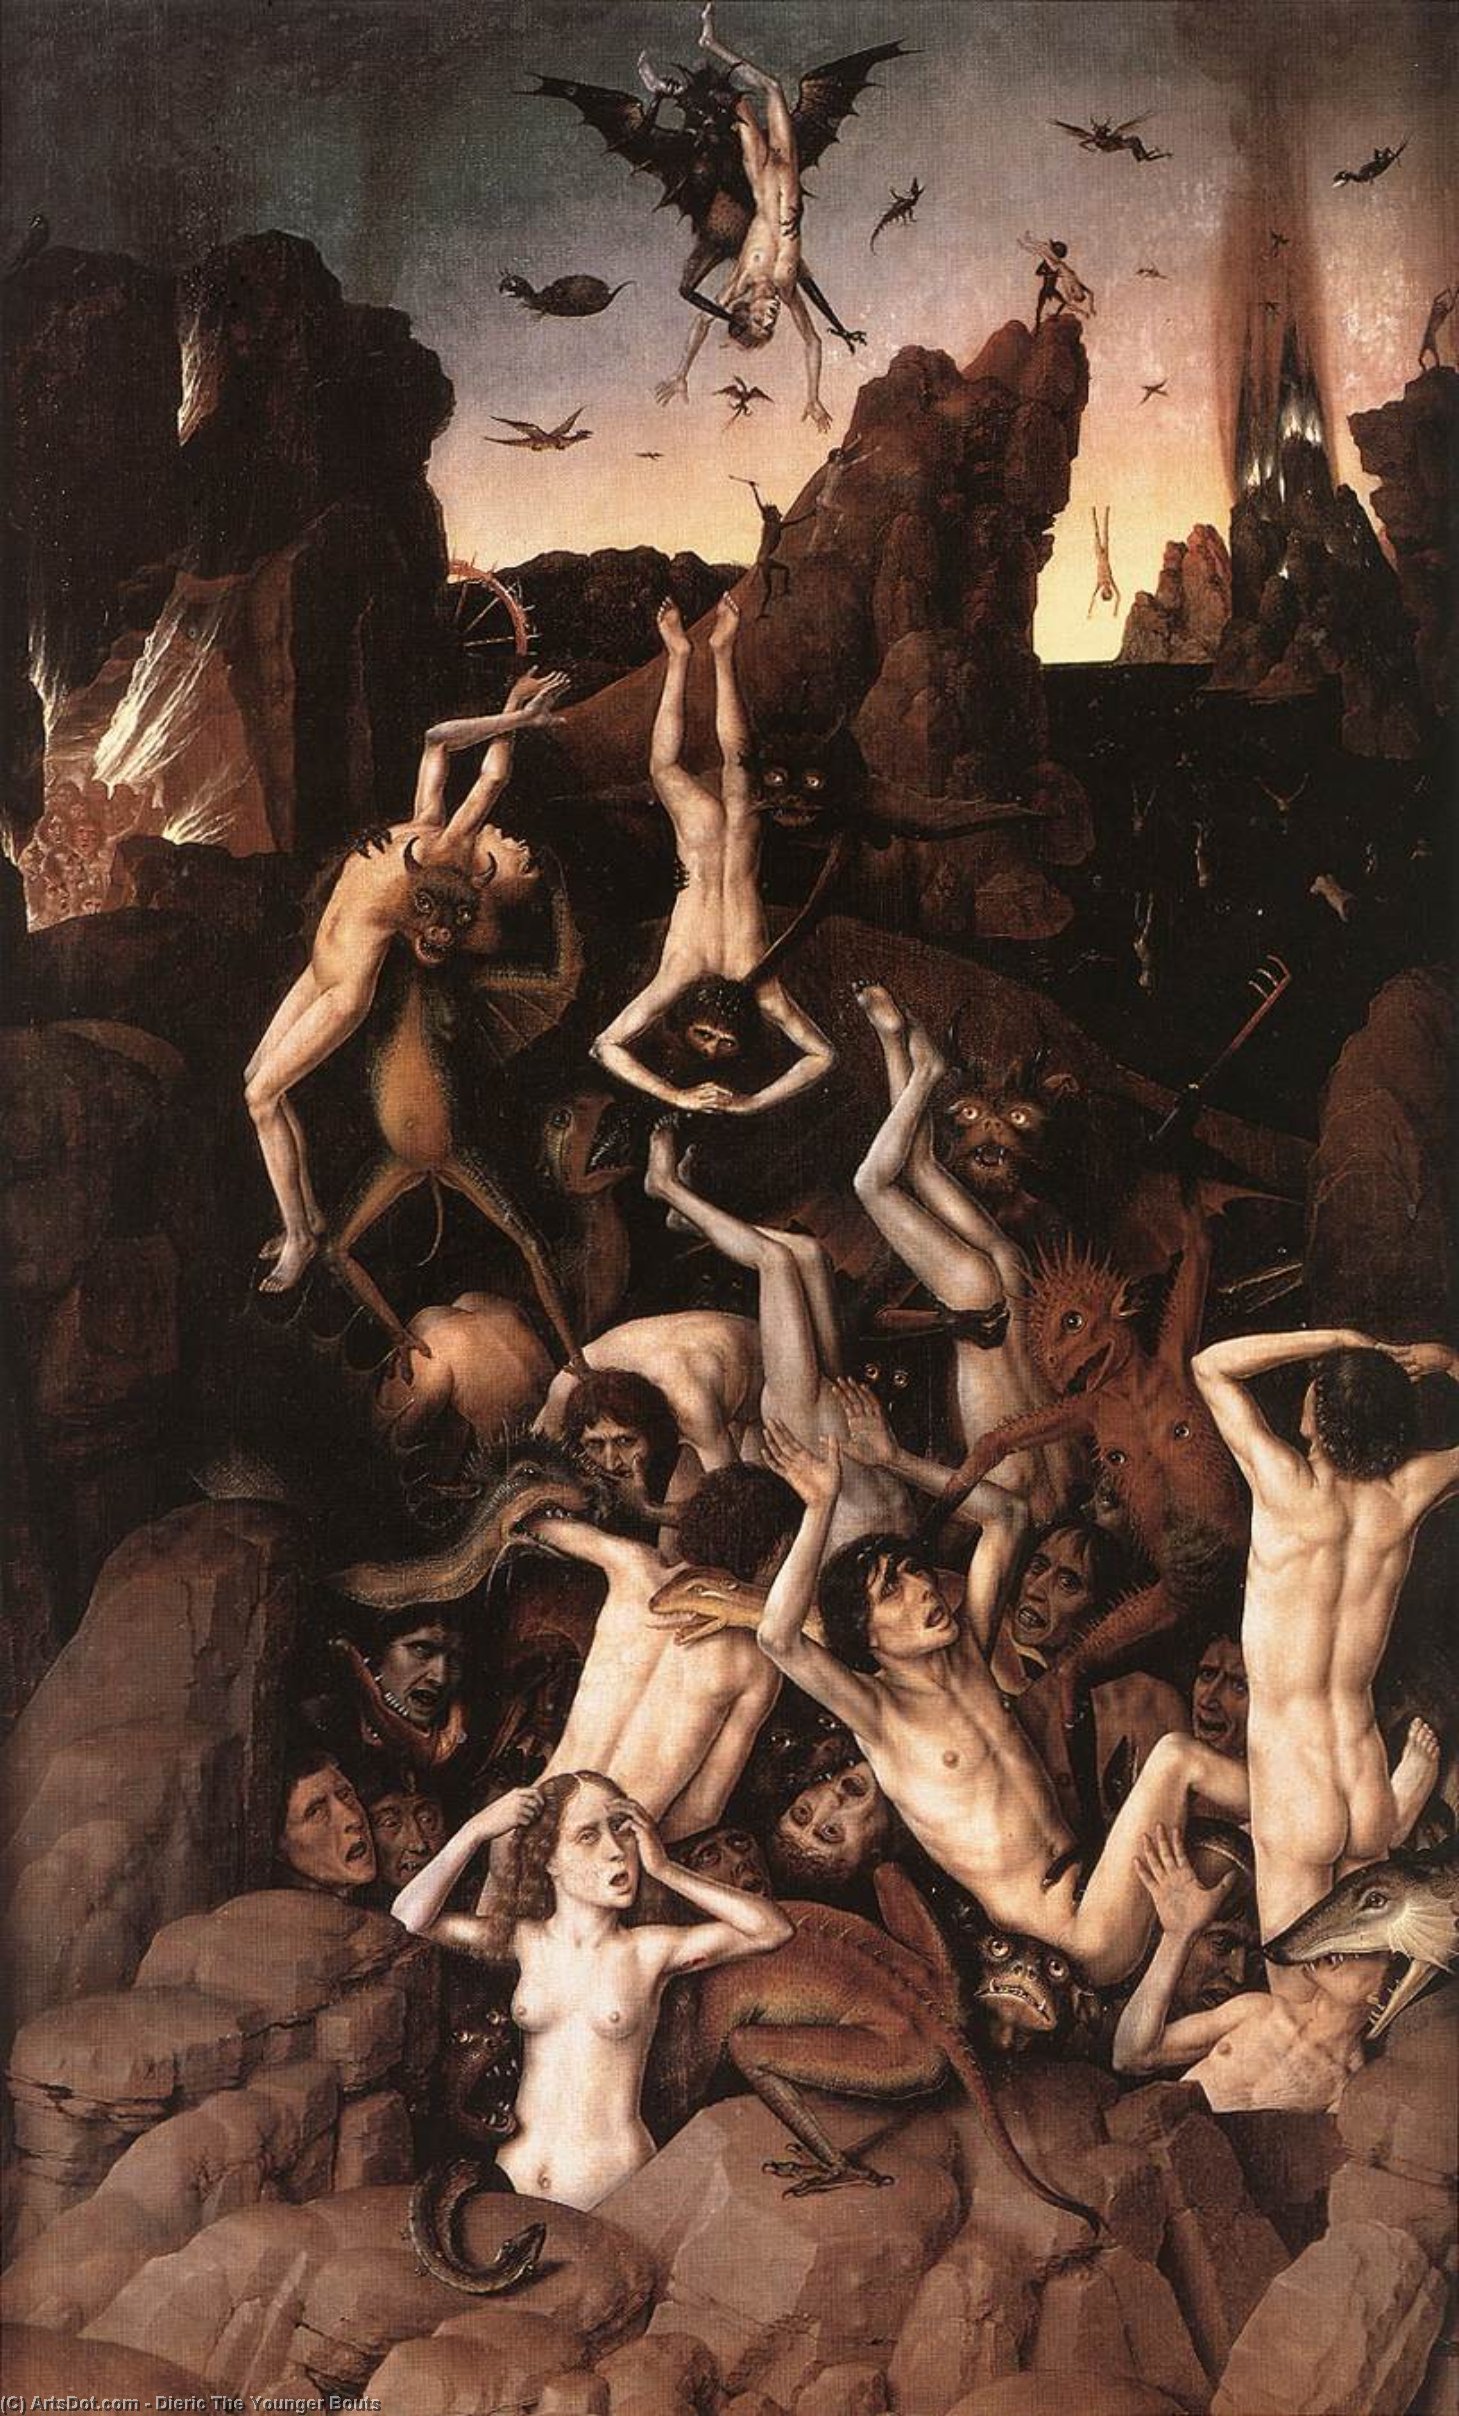 WikiOO.org - אנציקלופדיה לאמנויות יפות - ציור, יצירות אמנות Dieric The Younger Bouts - Hell